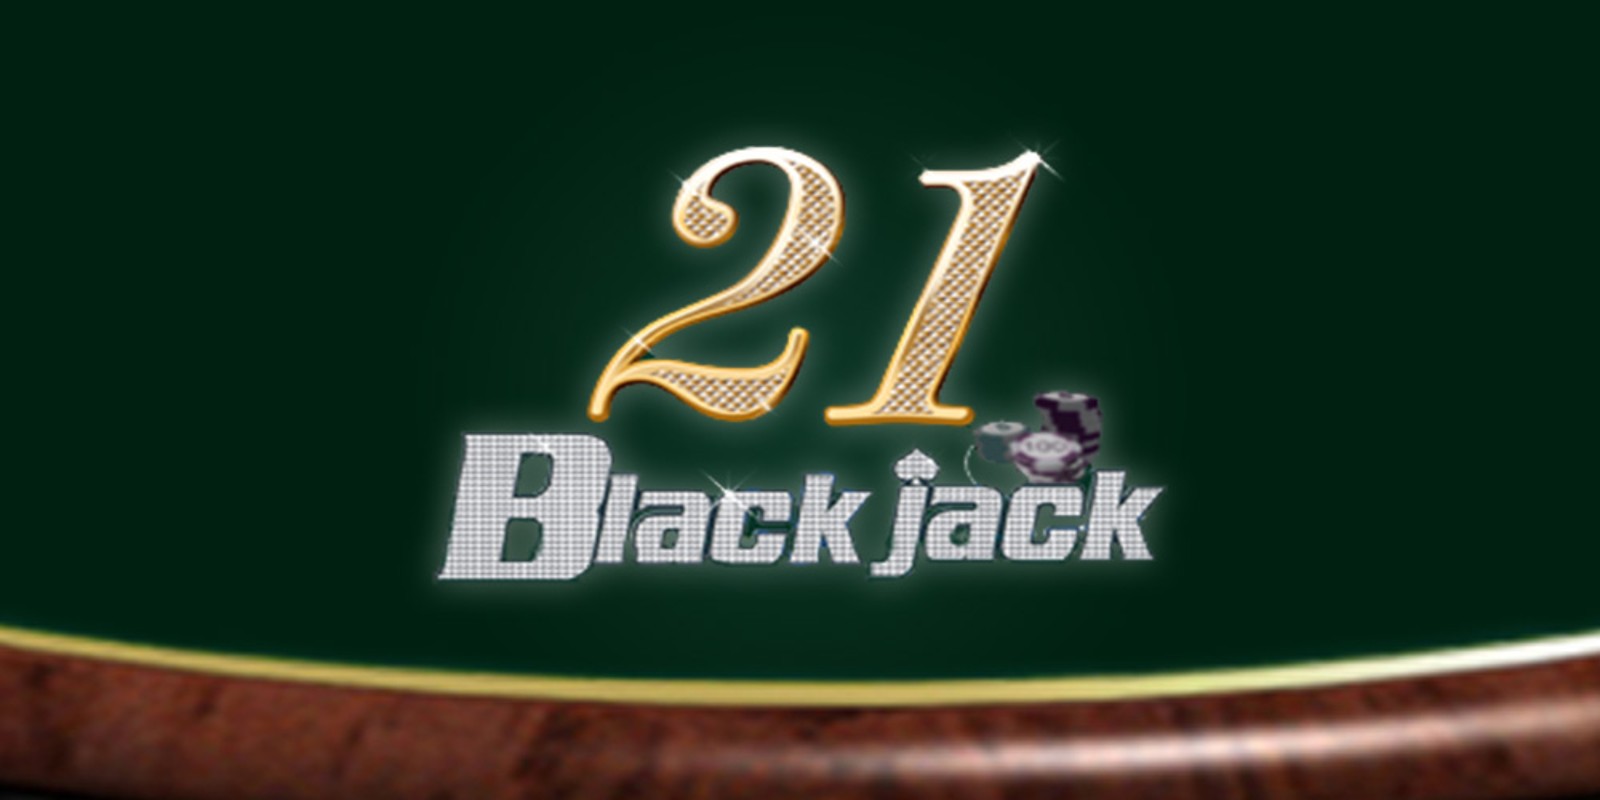 blackjack online casino live dealer